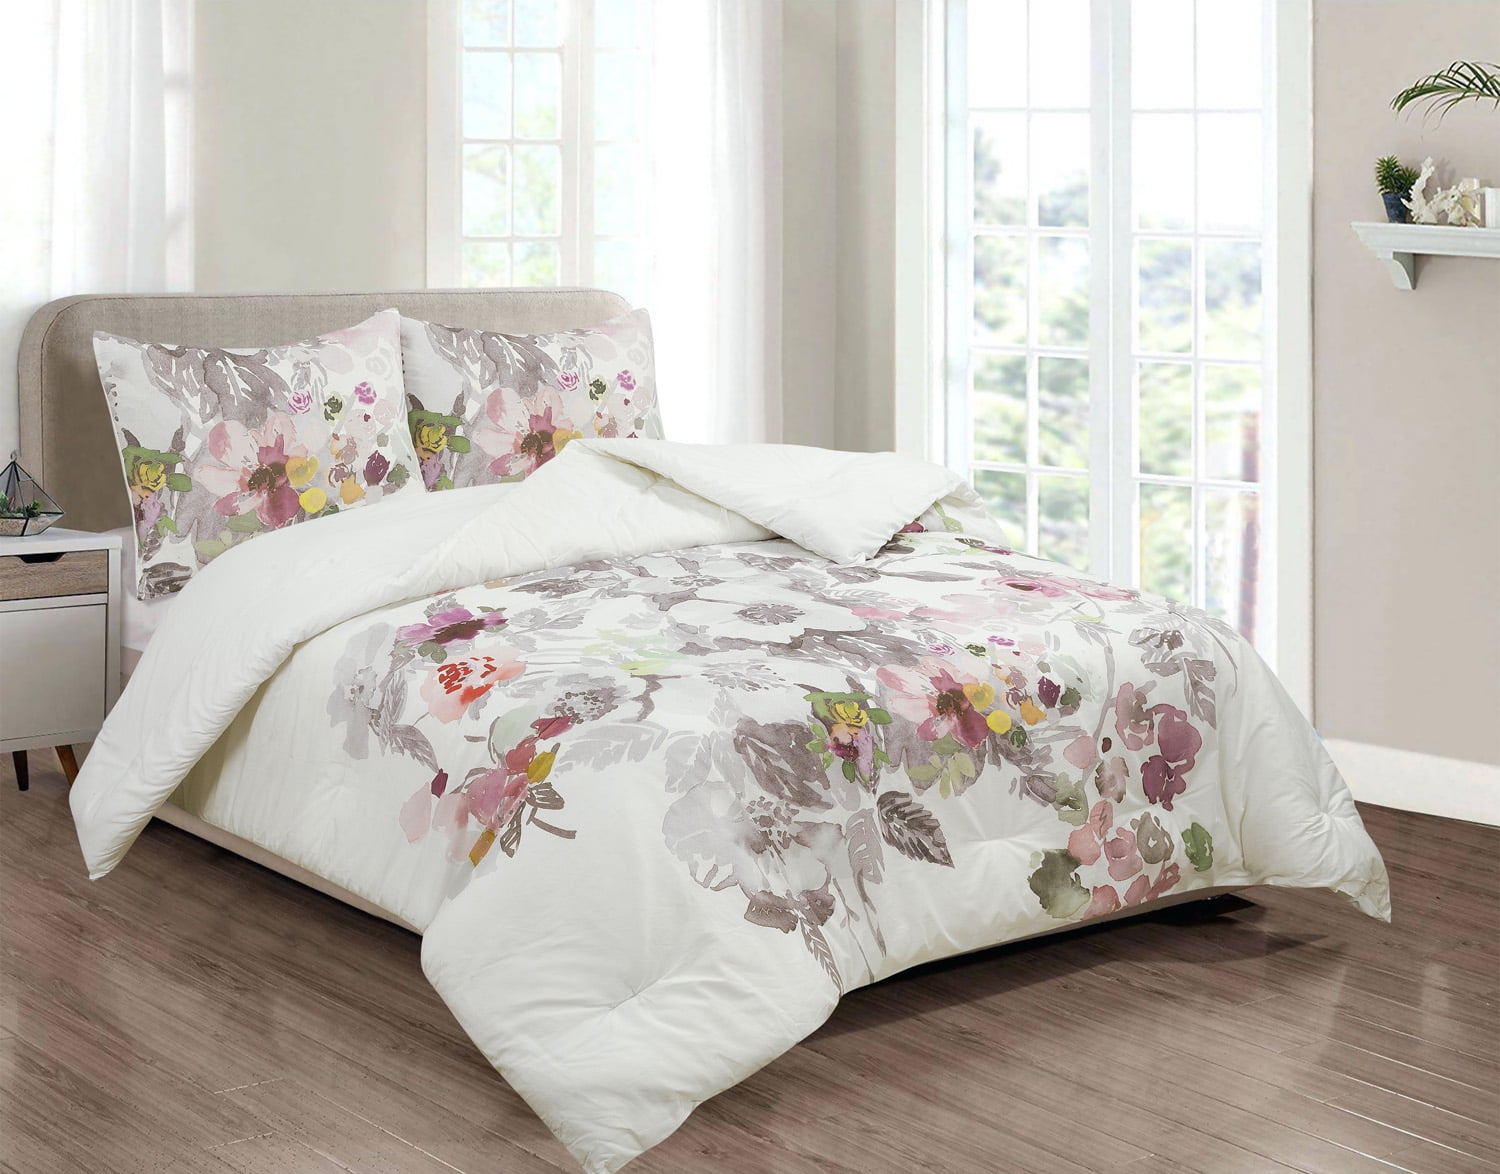 King 3-Piece Comforter Set, Brighton Grey & Blush Pink Watercolor